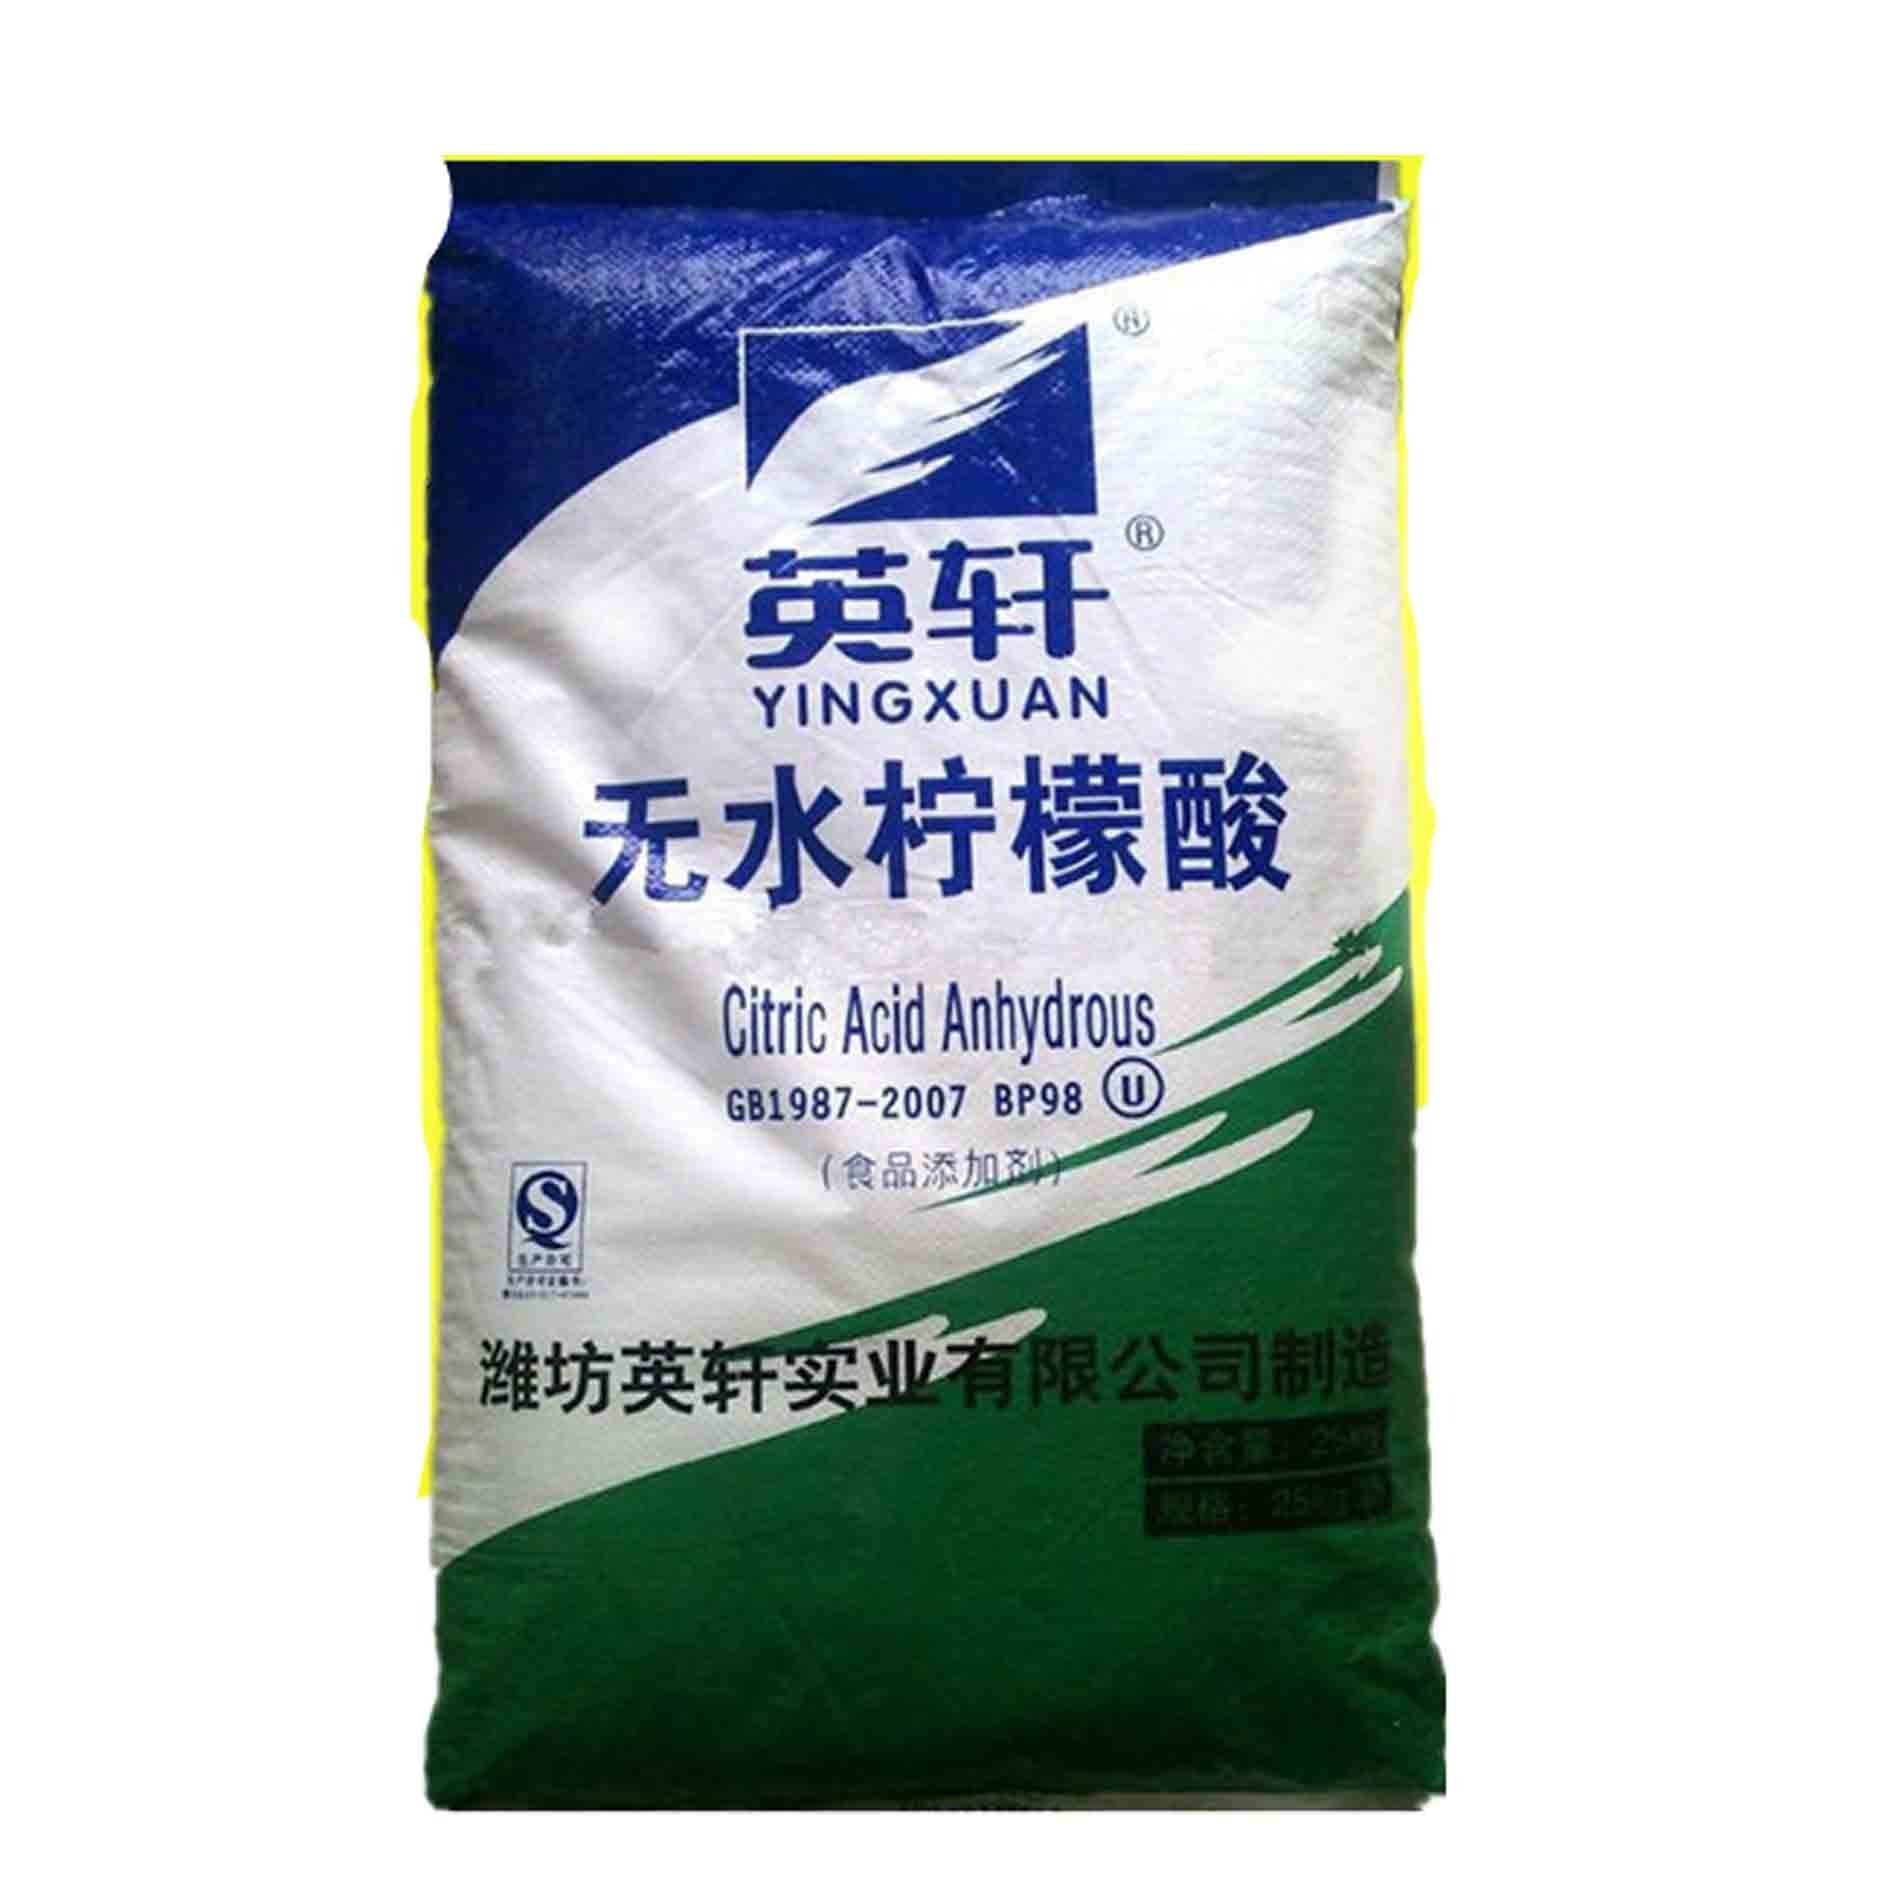 华南代理 高含量99% 柠檬酸 山东英轩柠檬酸钠 食品添加剂